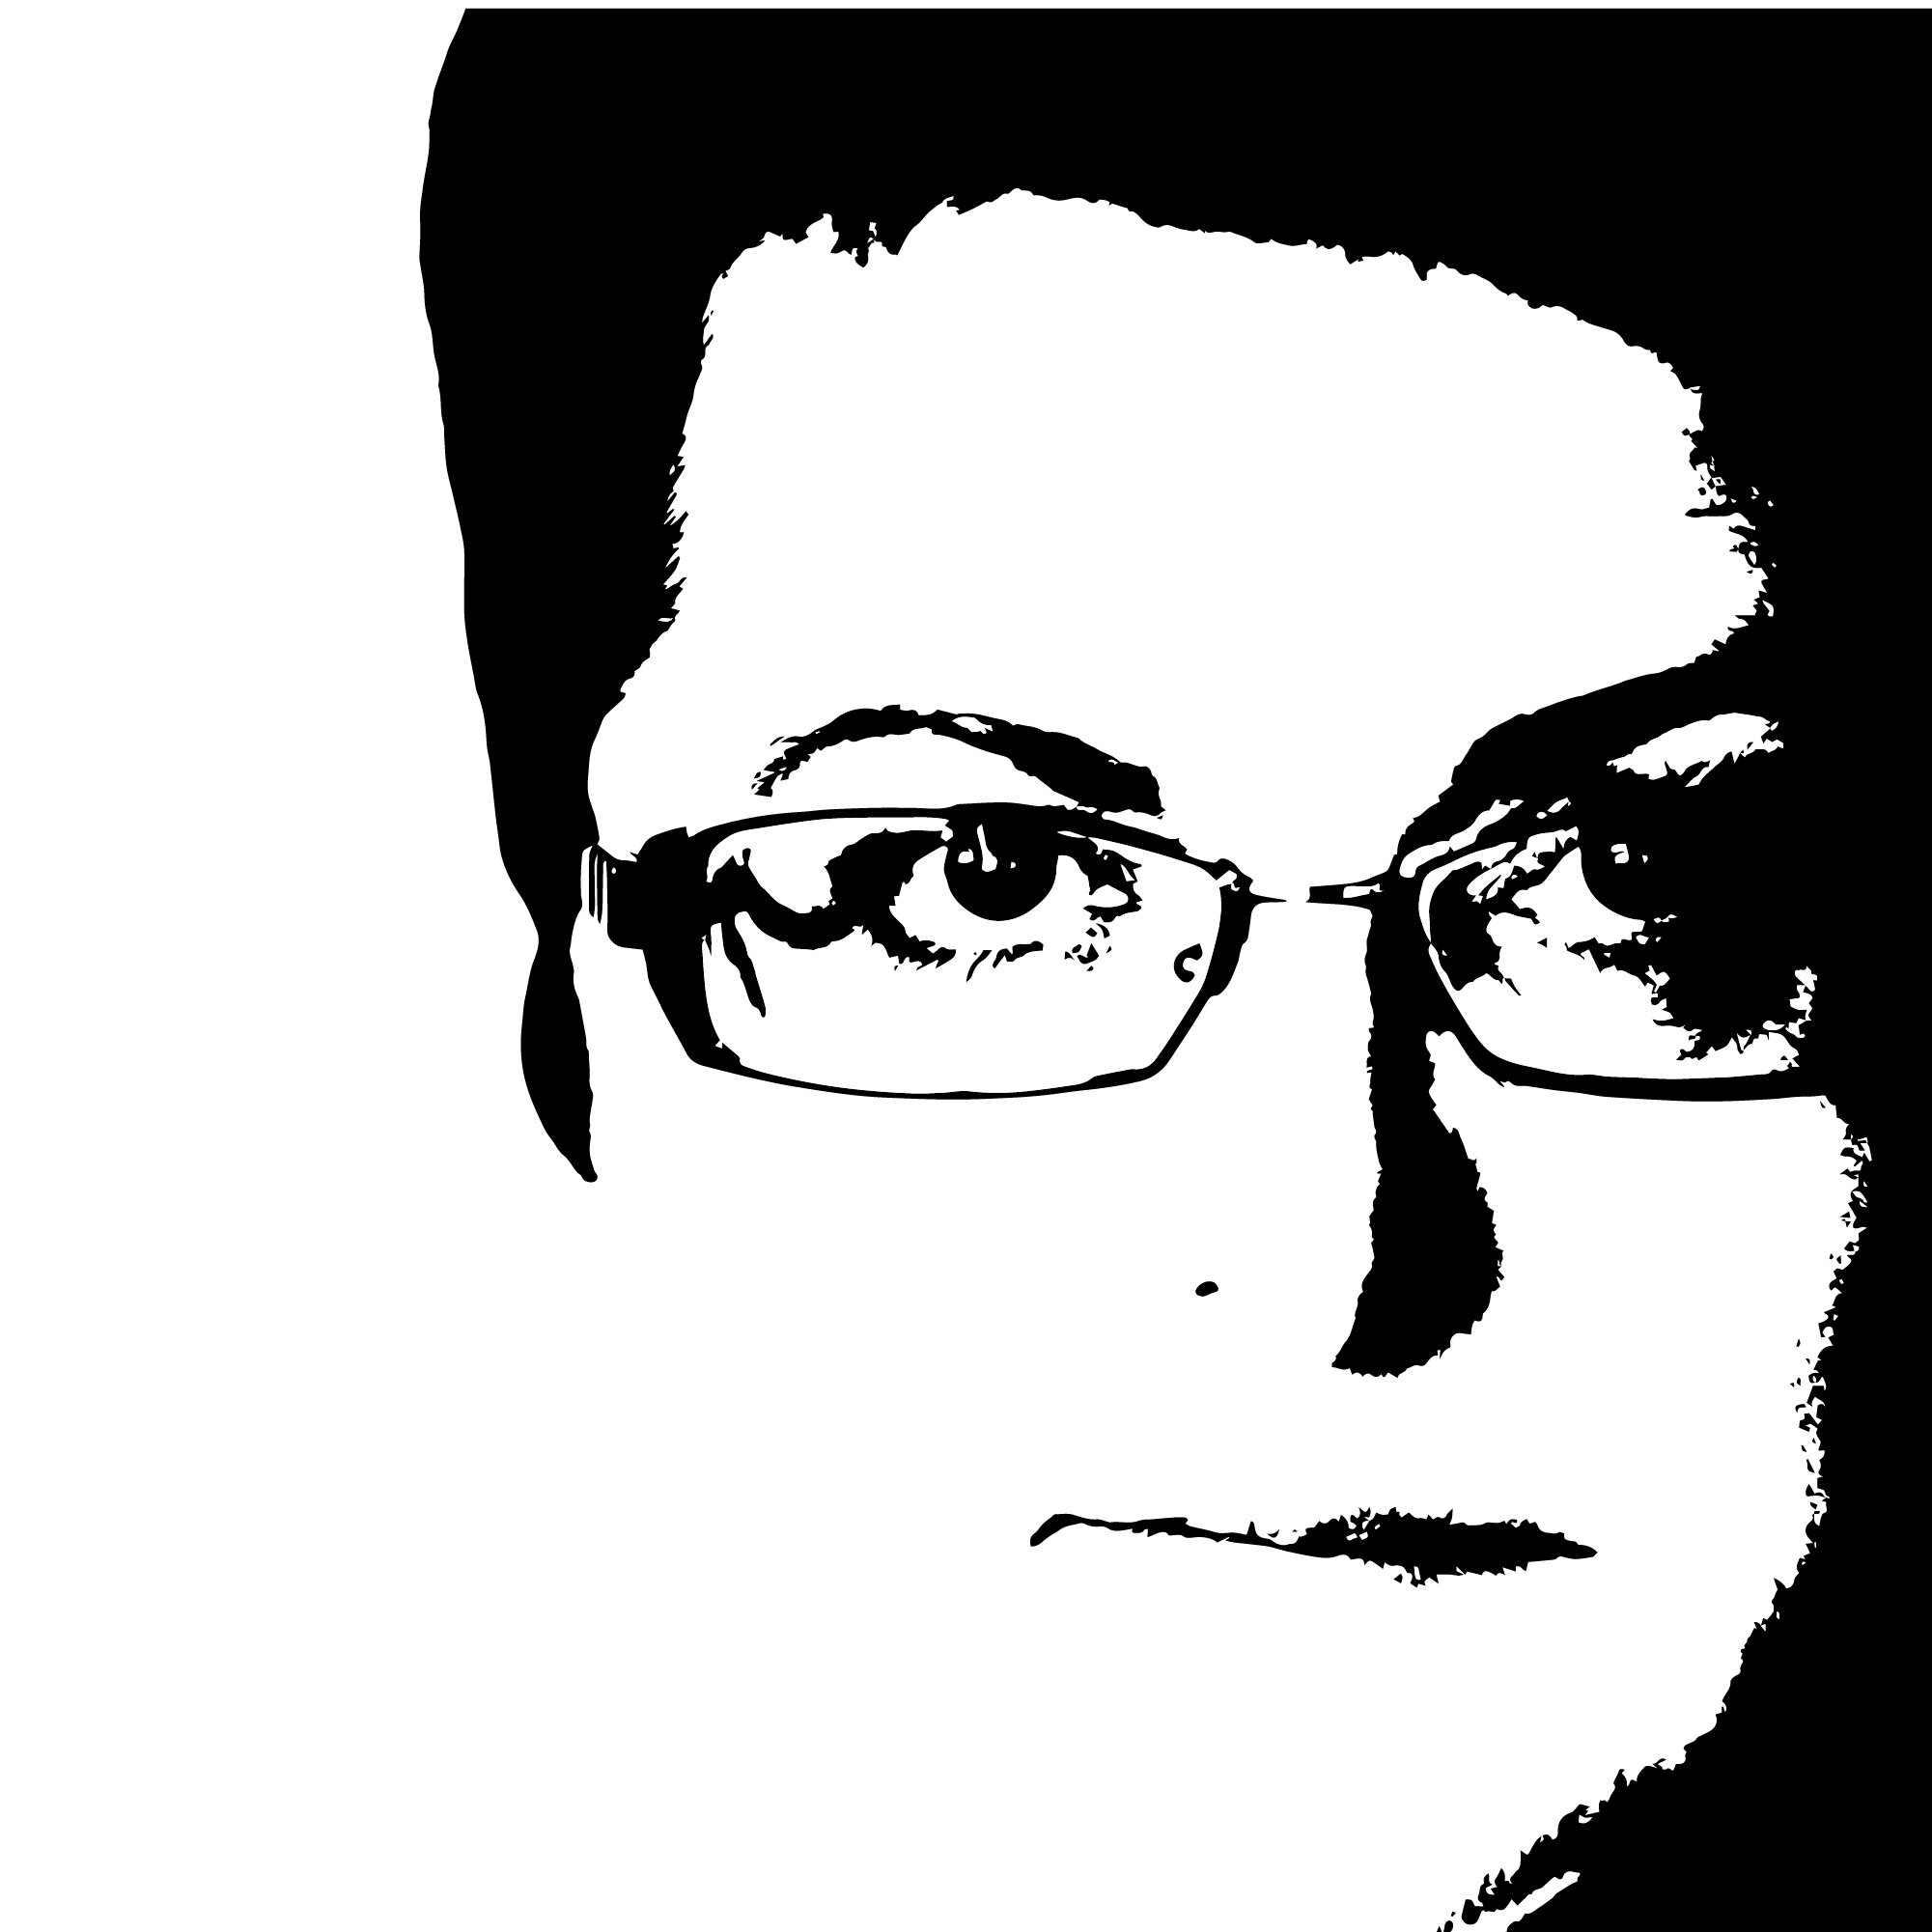 czarno-biały stylizowany portret łotewskiej pisarki Mara Zalite - zbliżenie na twarz. Kobieta ma krótkie, czarne włosy i okulary.